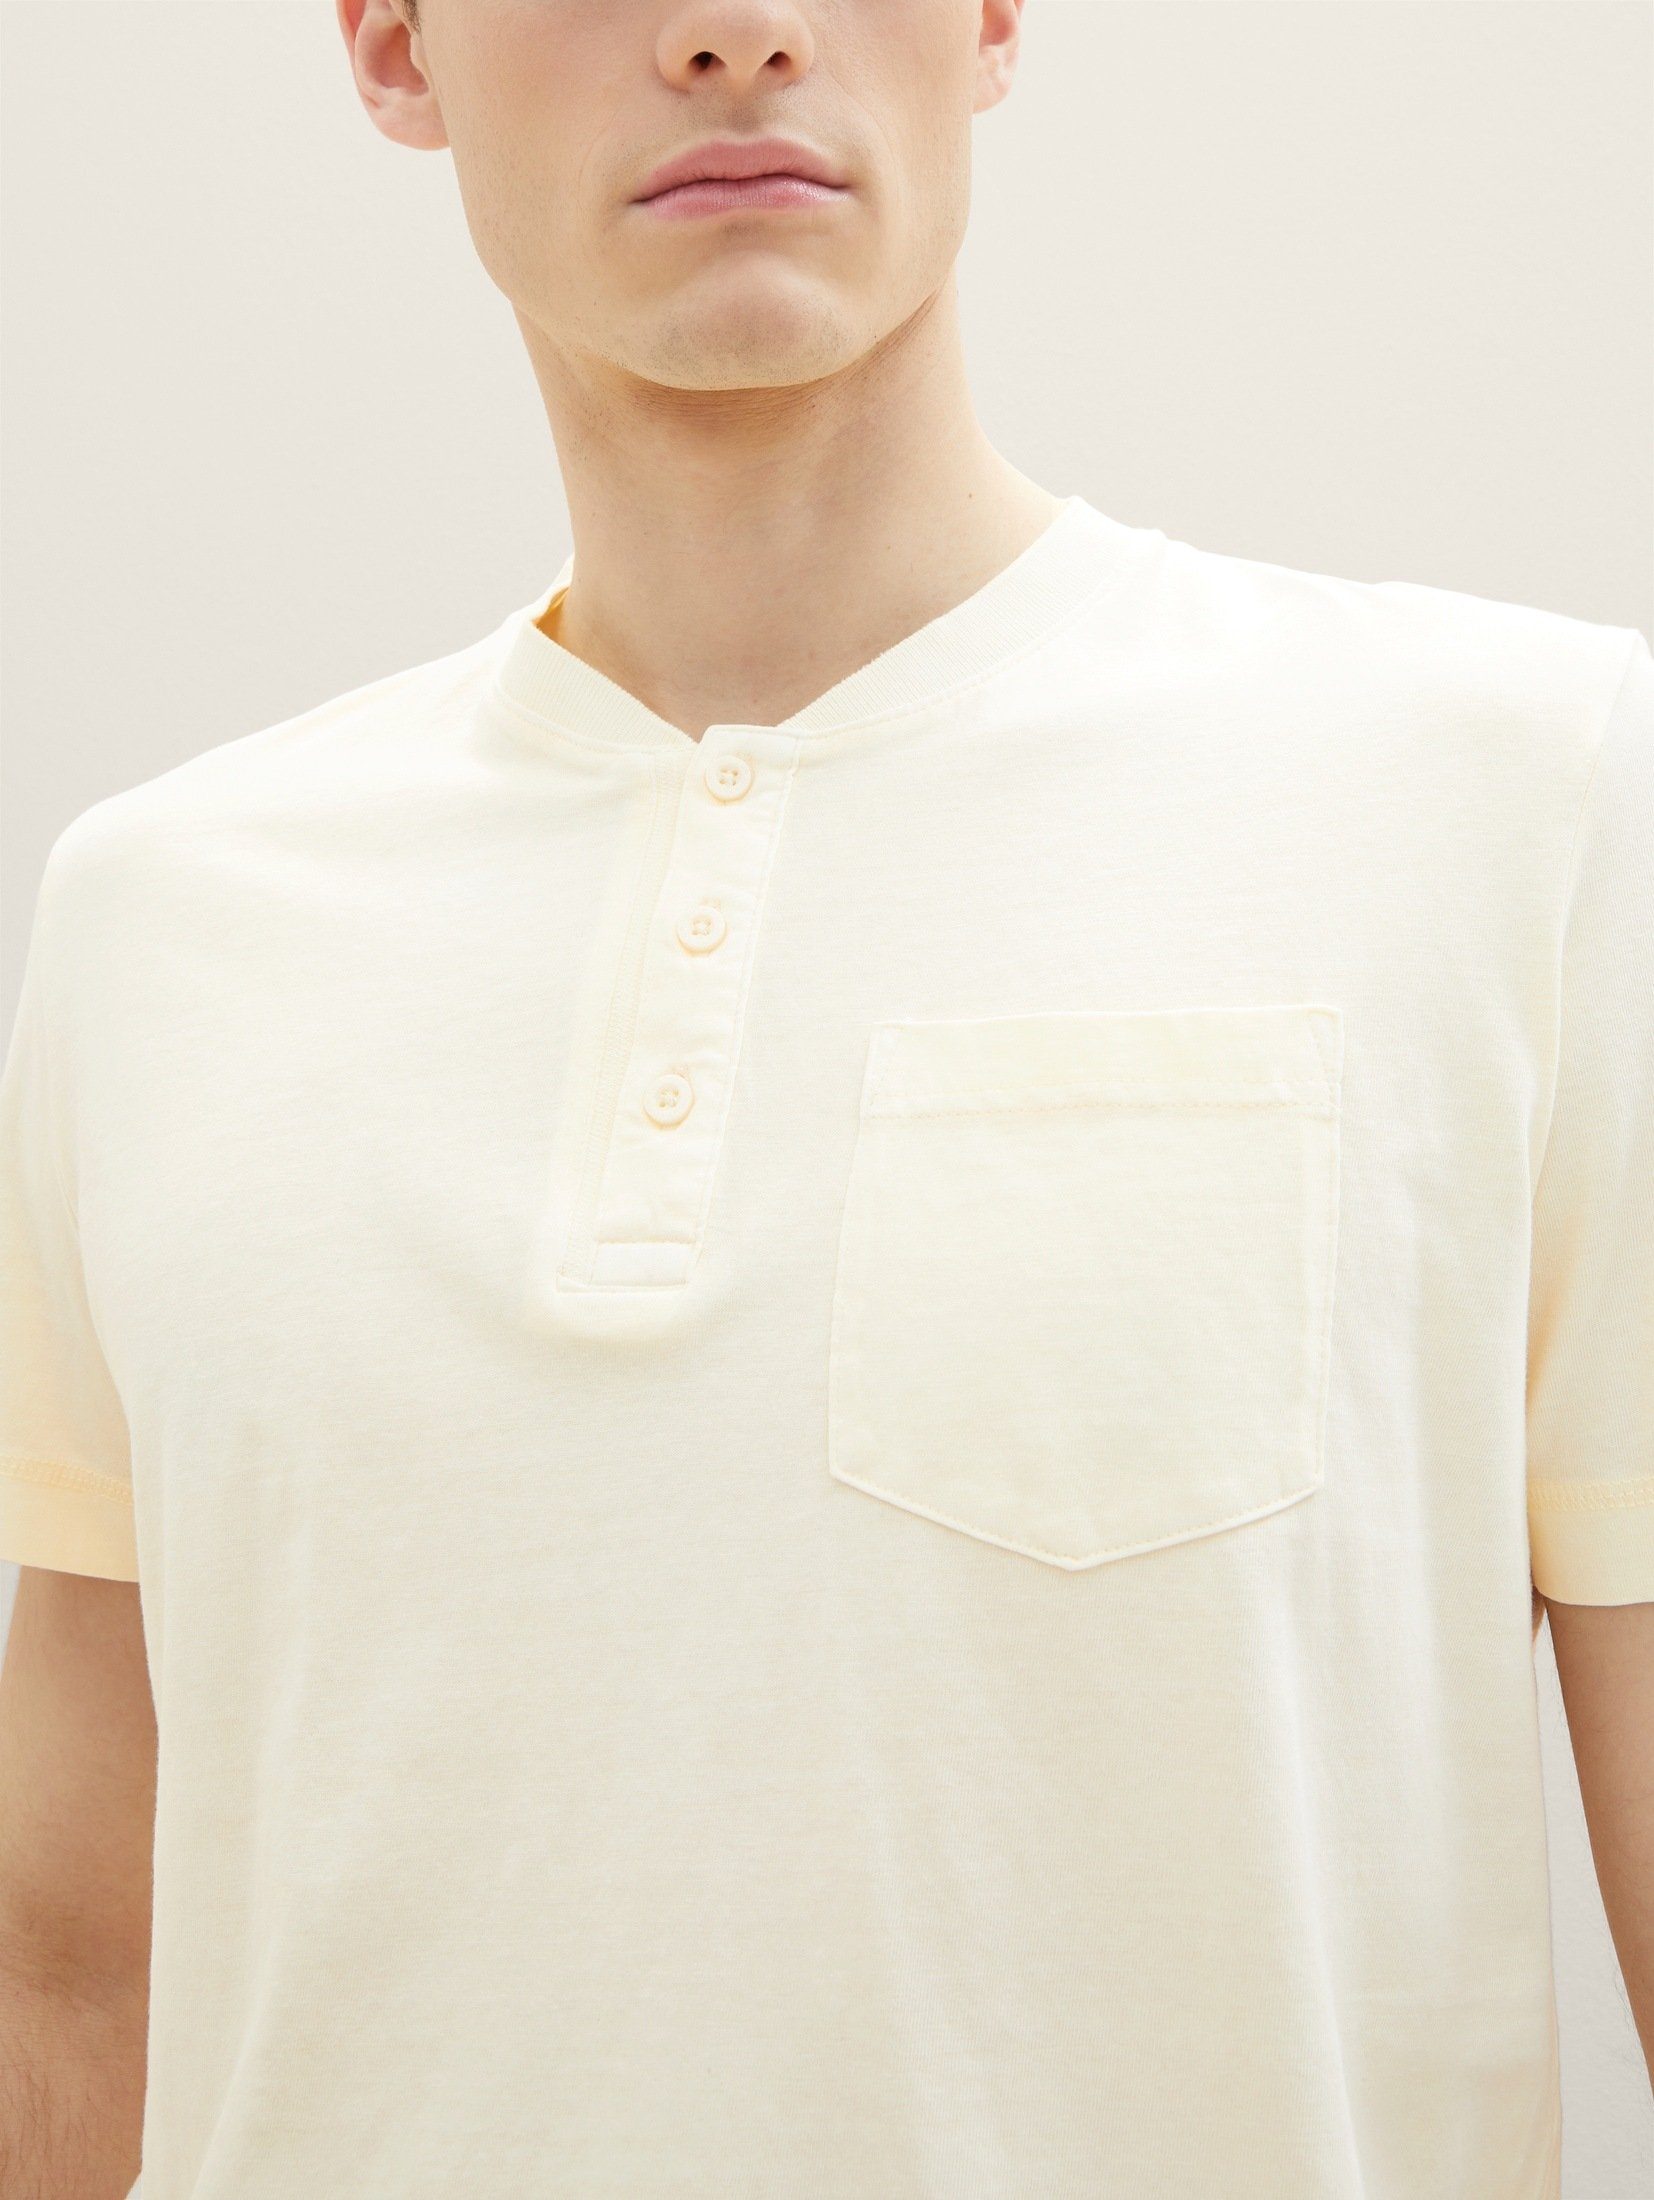 Waschung TAILOR T-Shirt vintage starker TOM mit beige T-Shirt